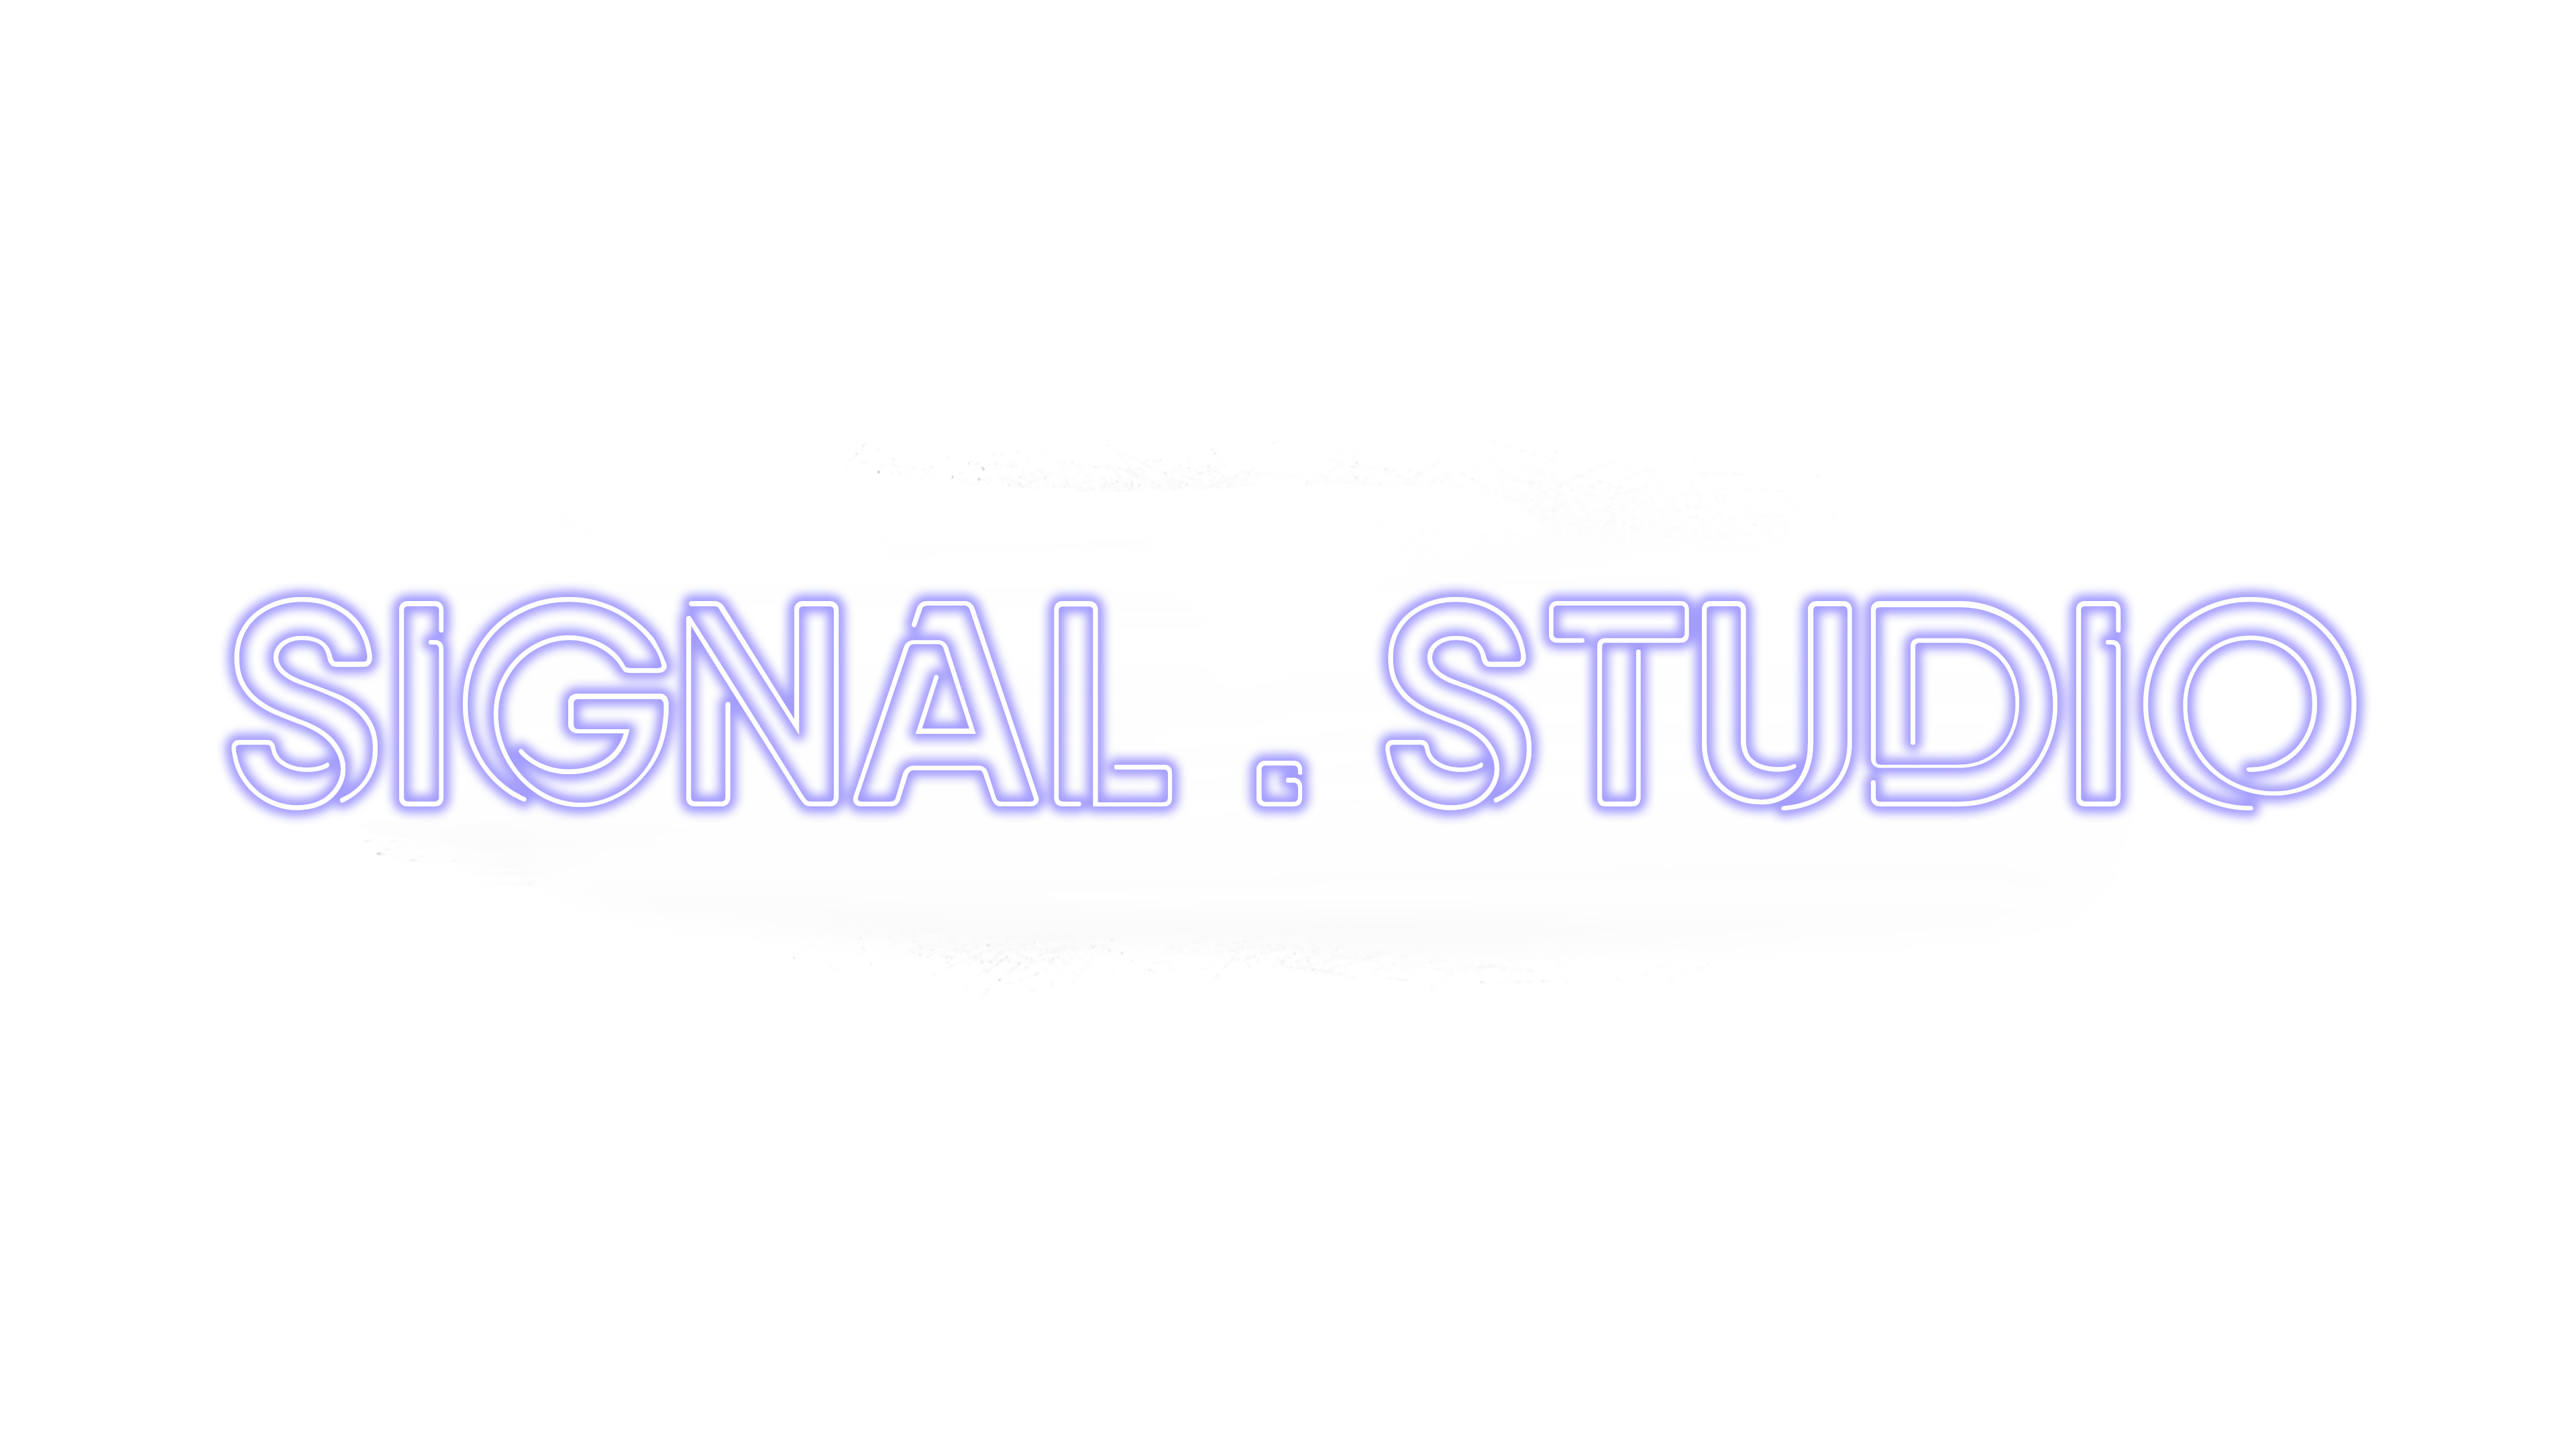 SIGNAL STUDIO